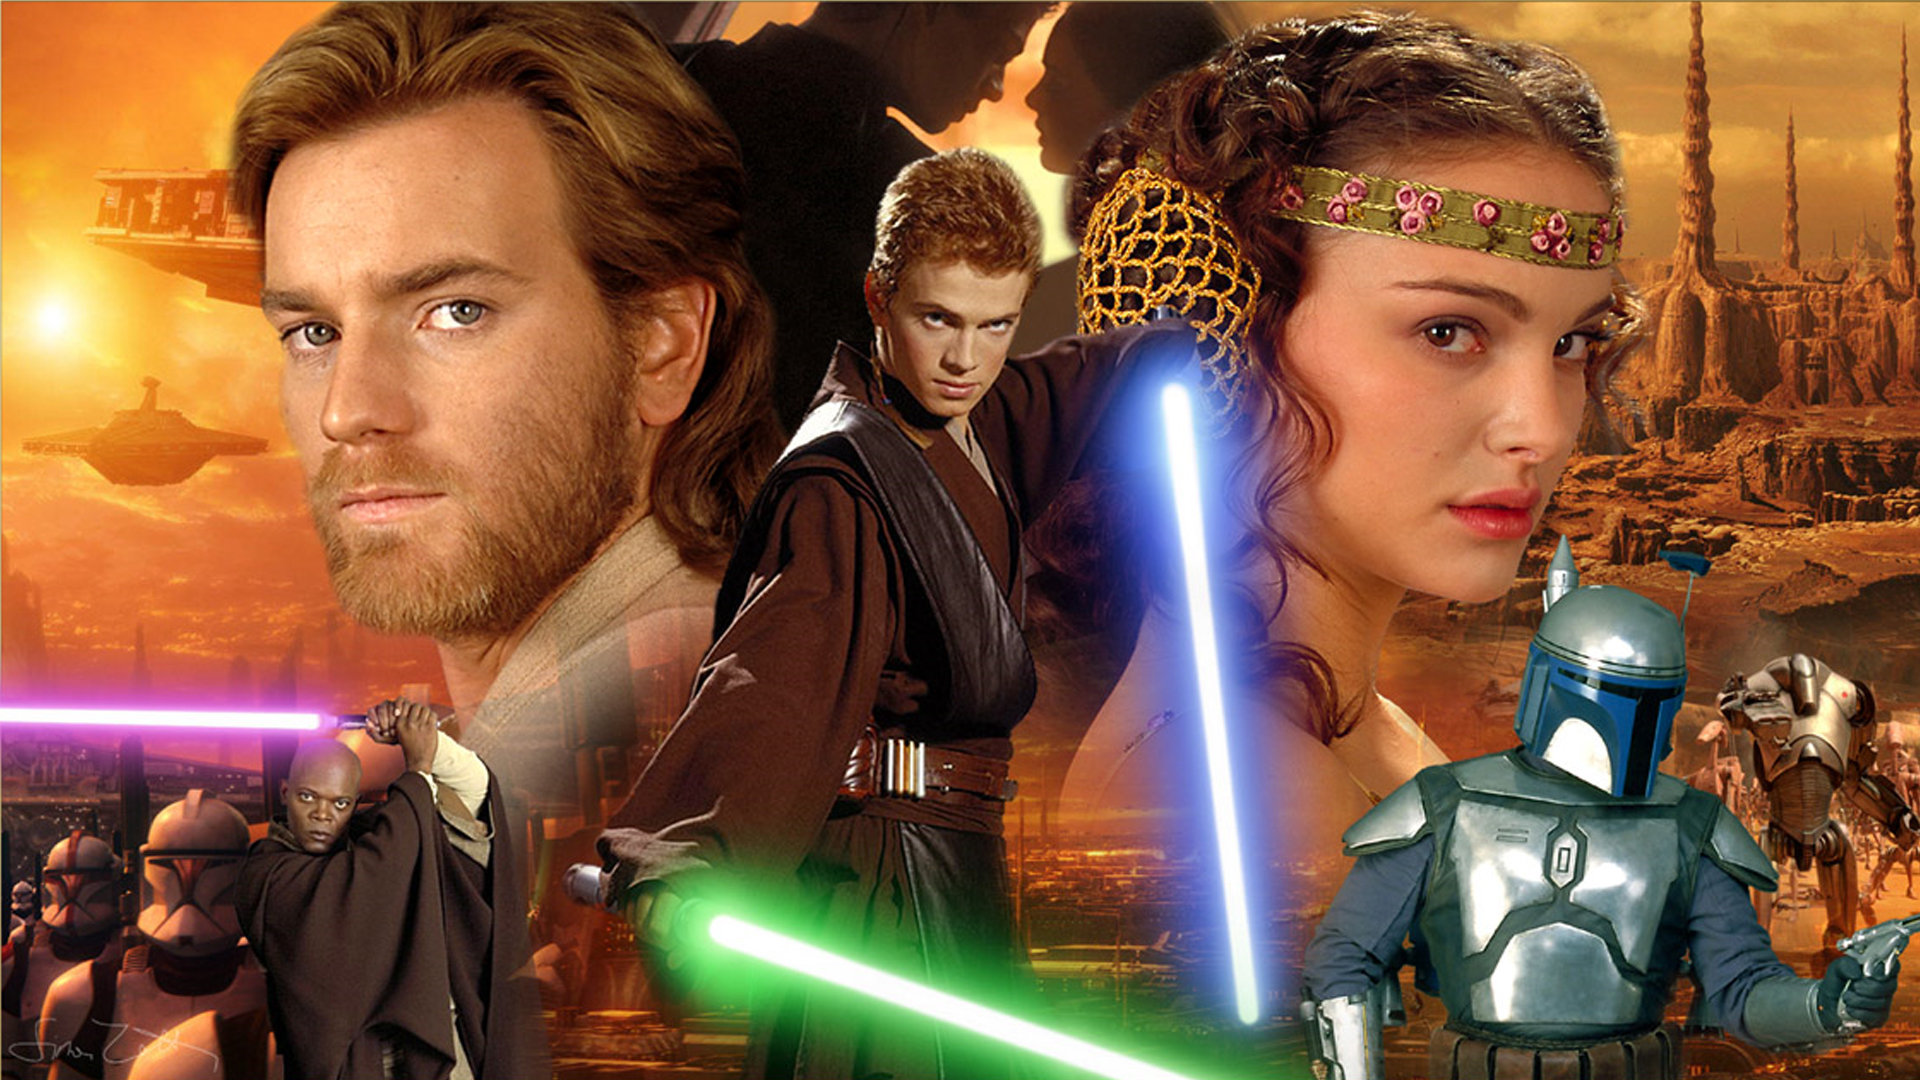 Star Wars Episode II: Attack Of The Clones HD wallpapers, Desktop wallpaper - most viewed